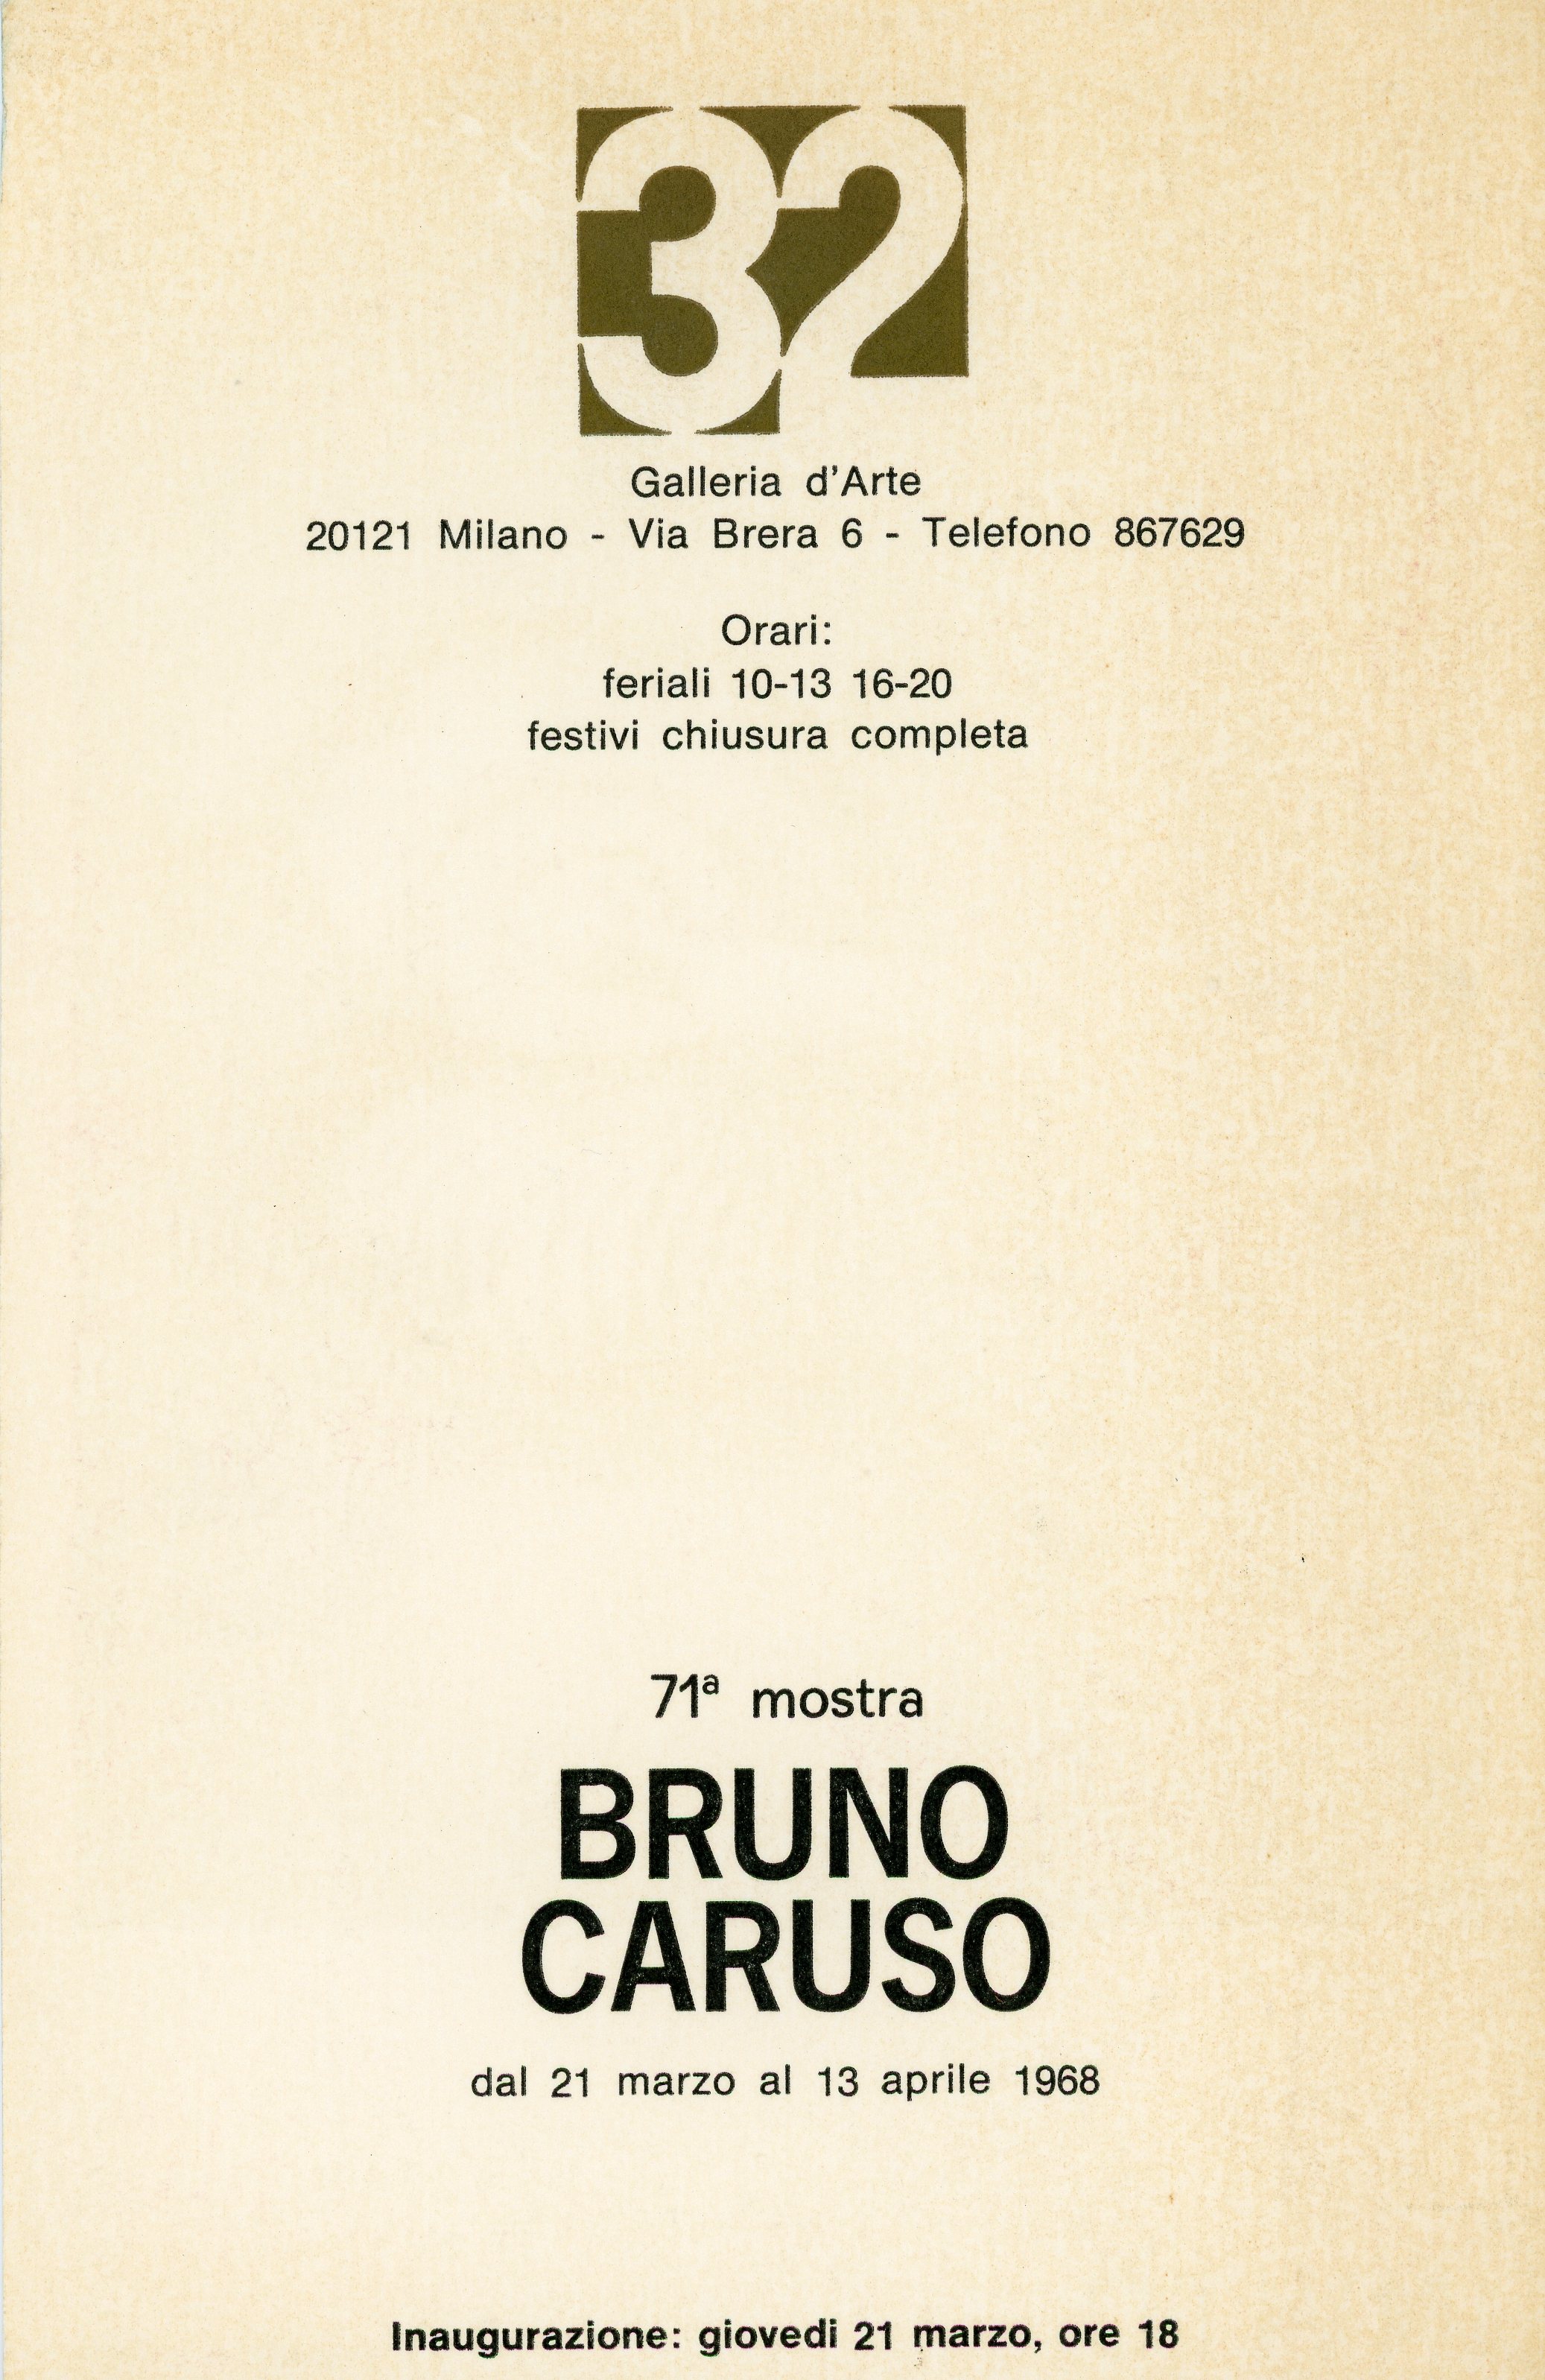 1968-04 Galleria 32 - Bruno Caruso_02.jpg